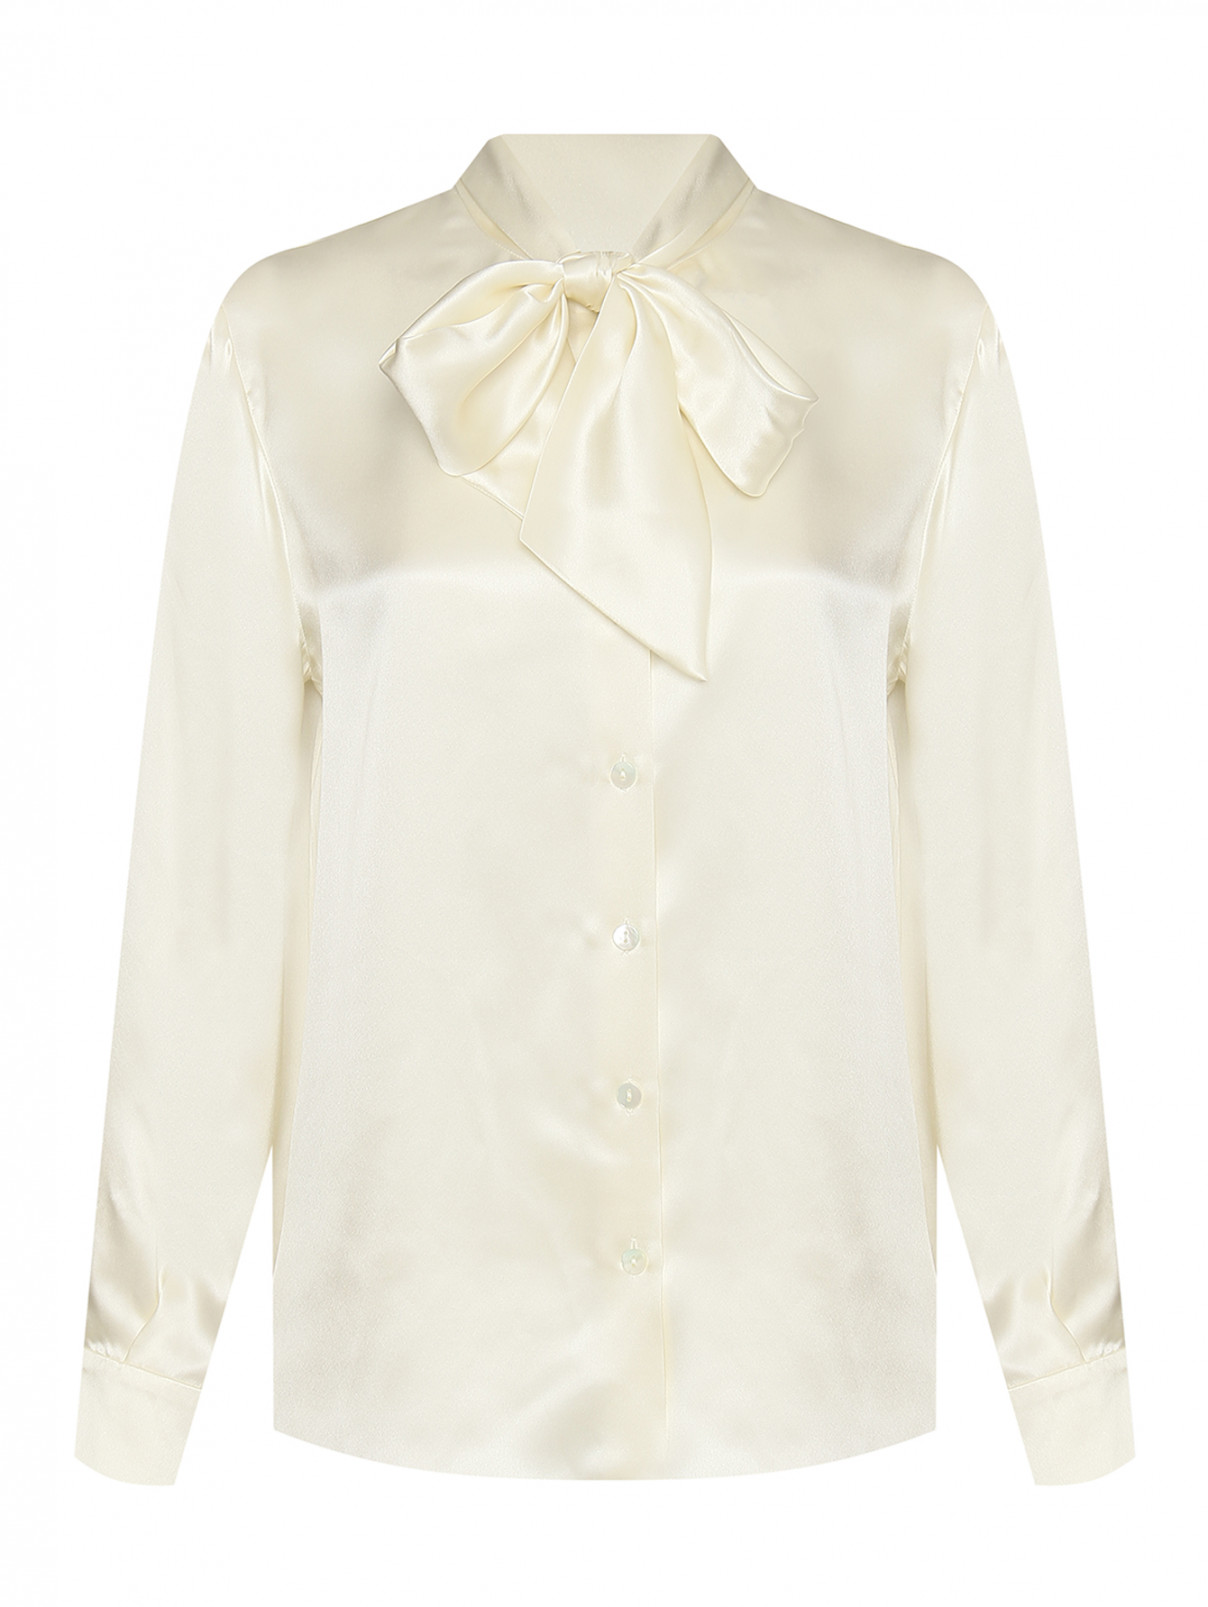 Блуза из шелка однотонная с бантом Luisa Spagnoli  –  Общий вид  – Цвет:  Белый